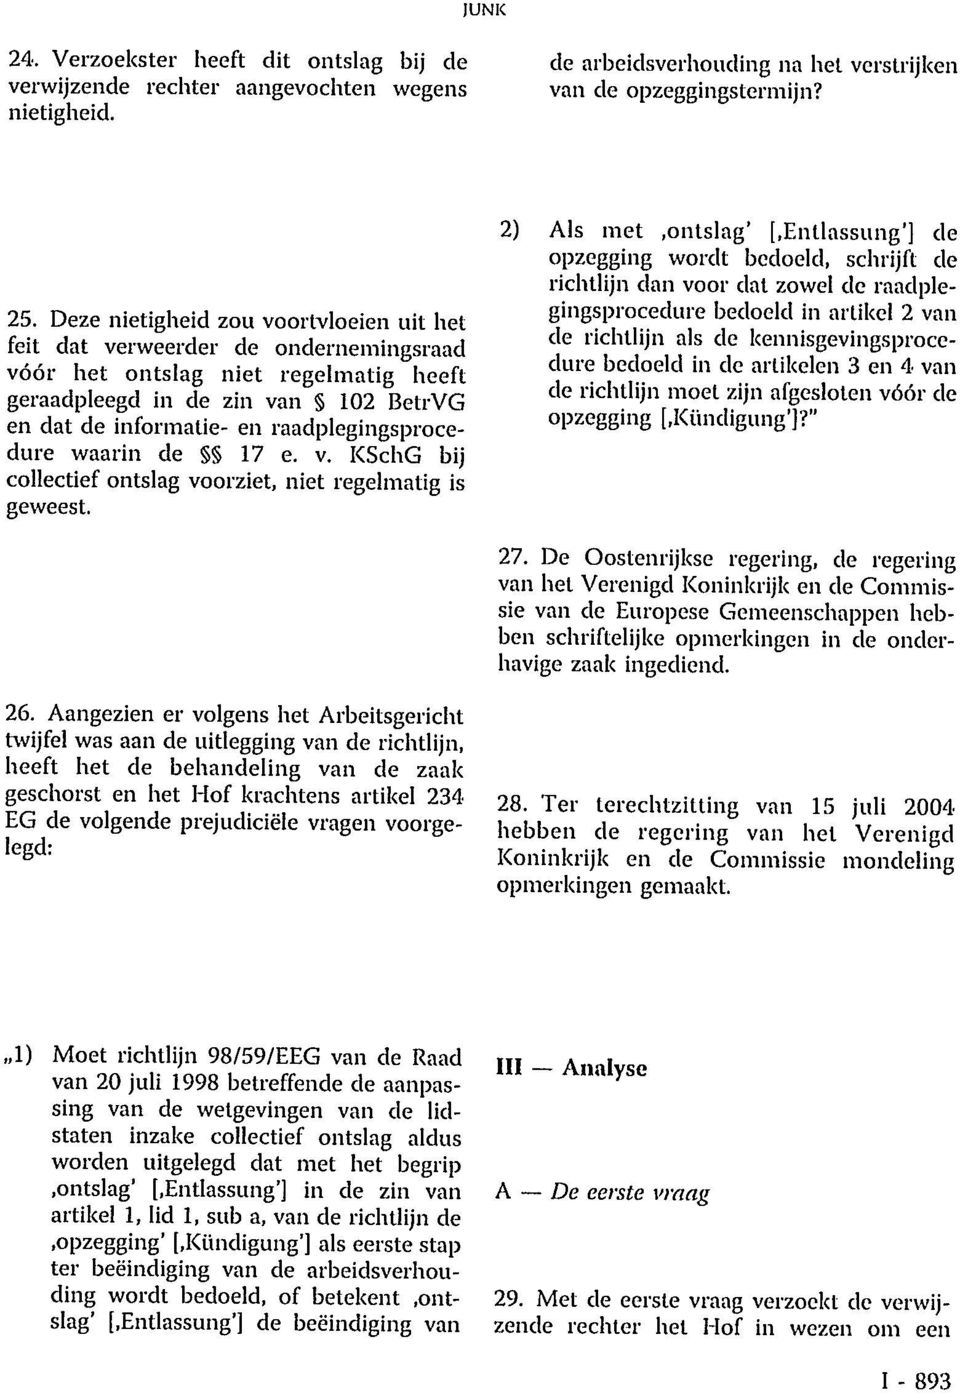 raadplegingsprocedure waarin de 17 e. v. KSchG bij collectief ontslag voorziet, niet regelmatig is geweest. 2) Als met.ontslag' [.